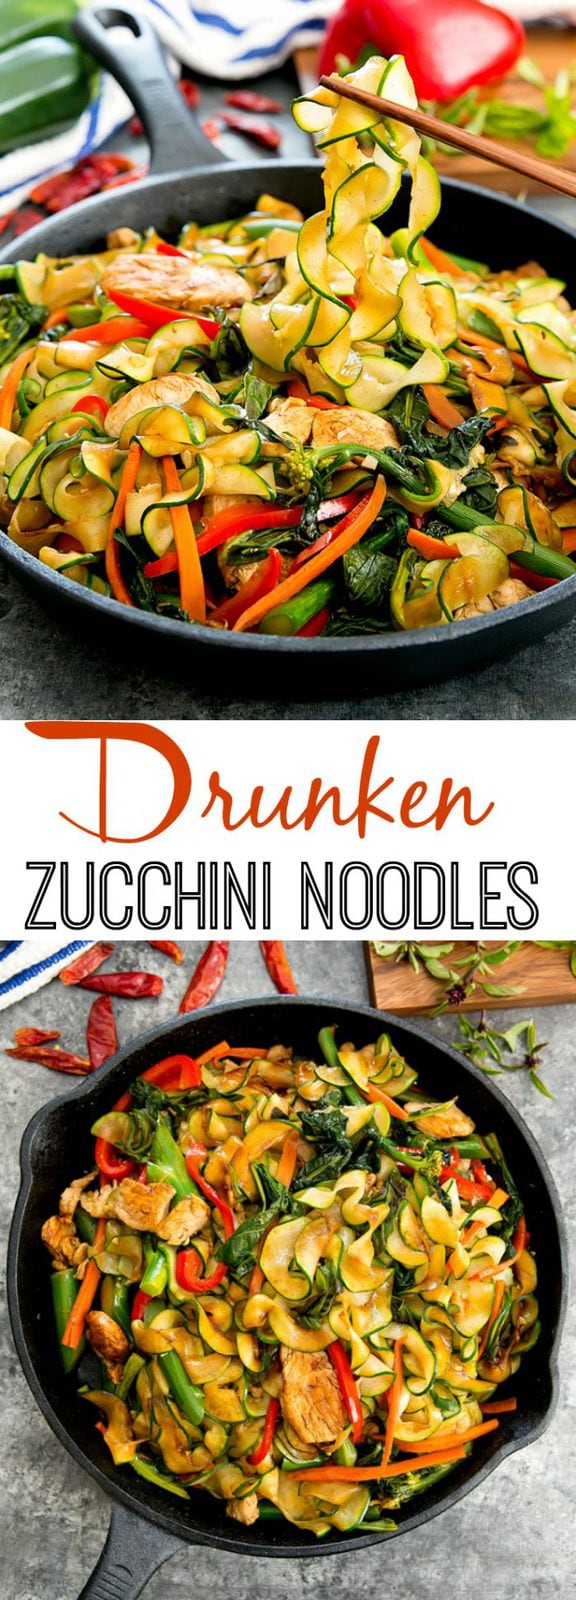 Thai Drunken Zucchini Noodles